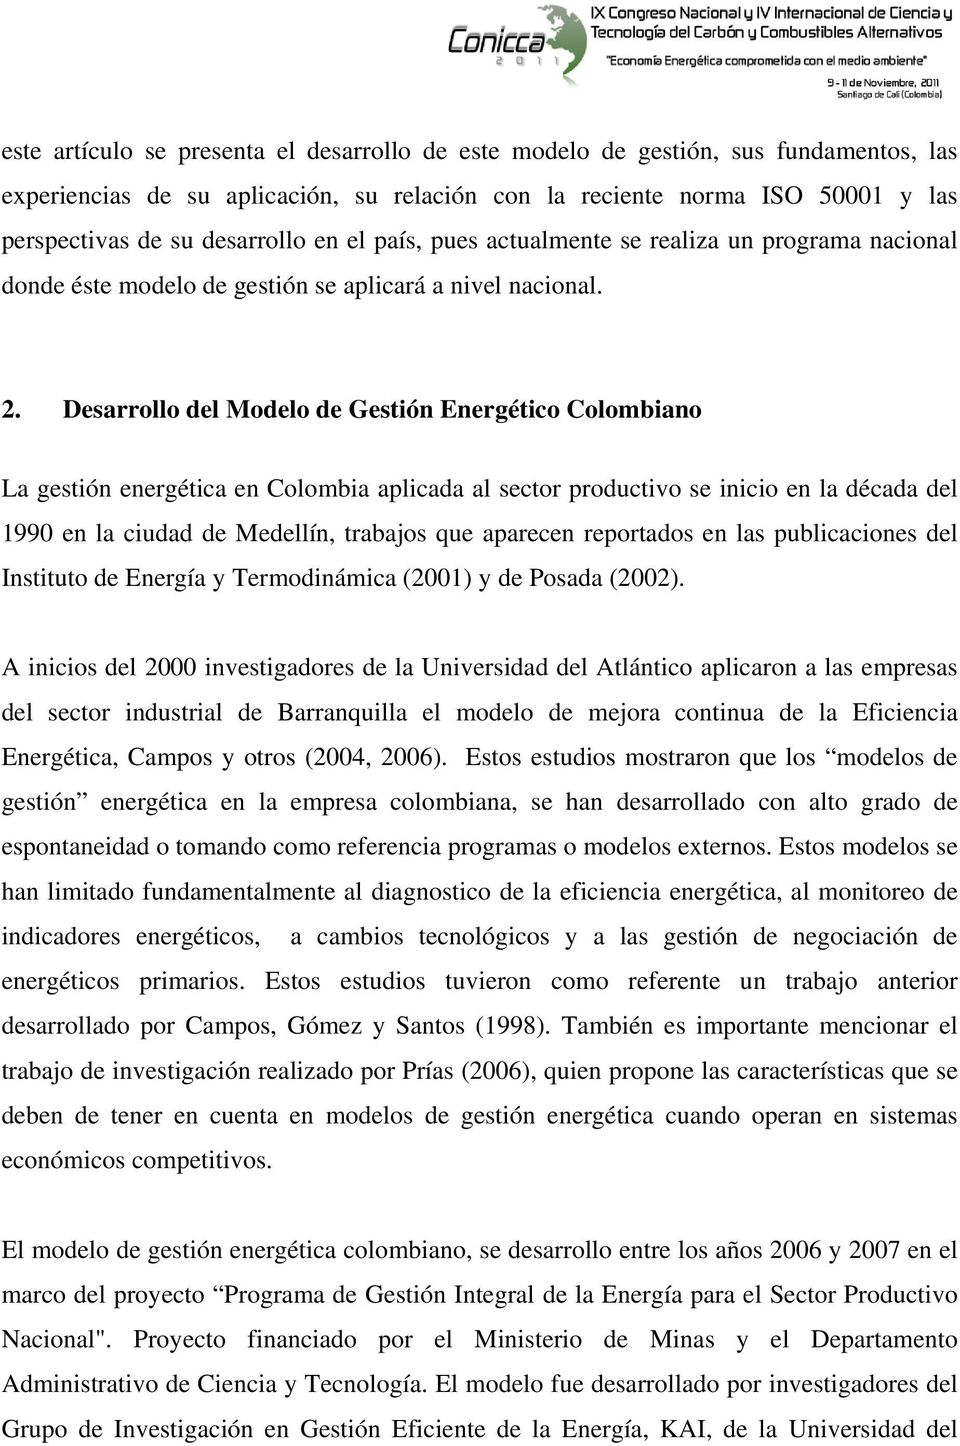 Desarrollo del Modelo de Gestión Energético Colombiano La gestión energética en Colombia aplicada al sector productivo se inicio en la década del 1990 en la ciudad de Medellín, trabajos que aparecen